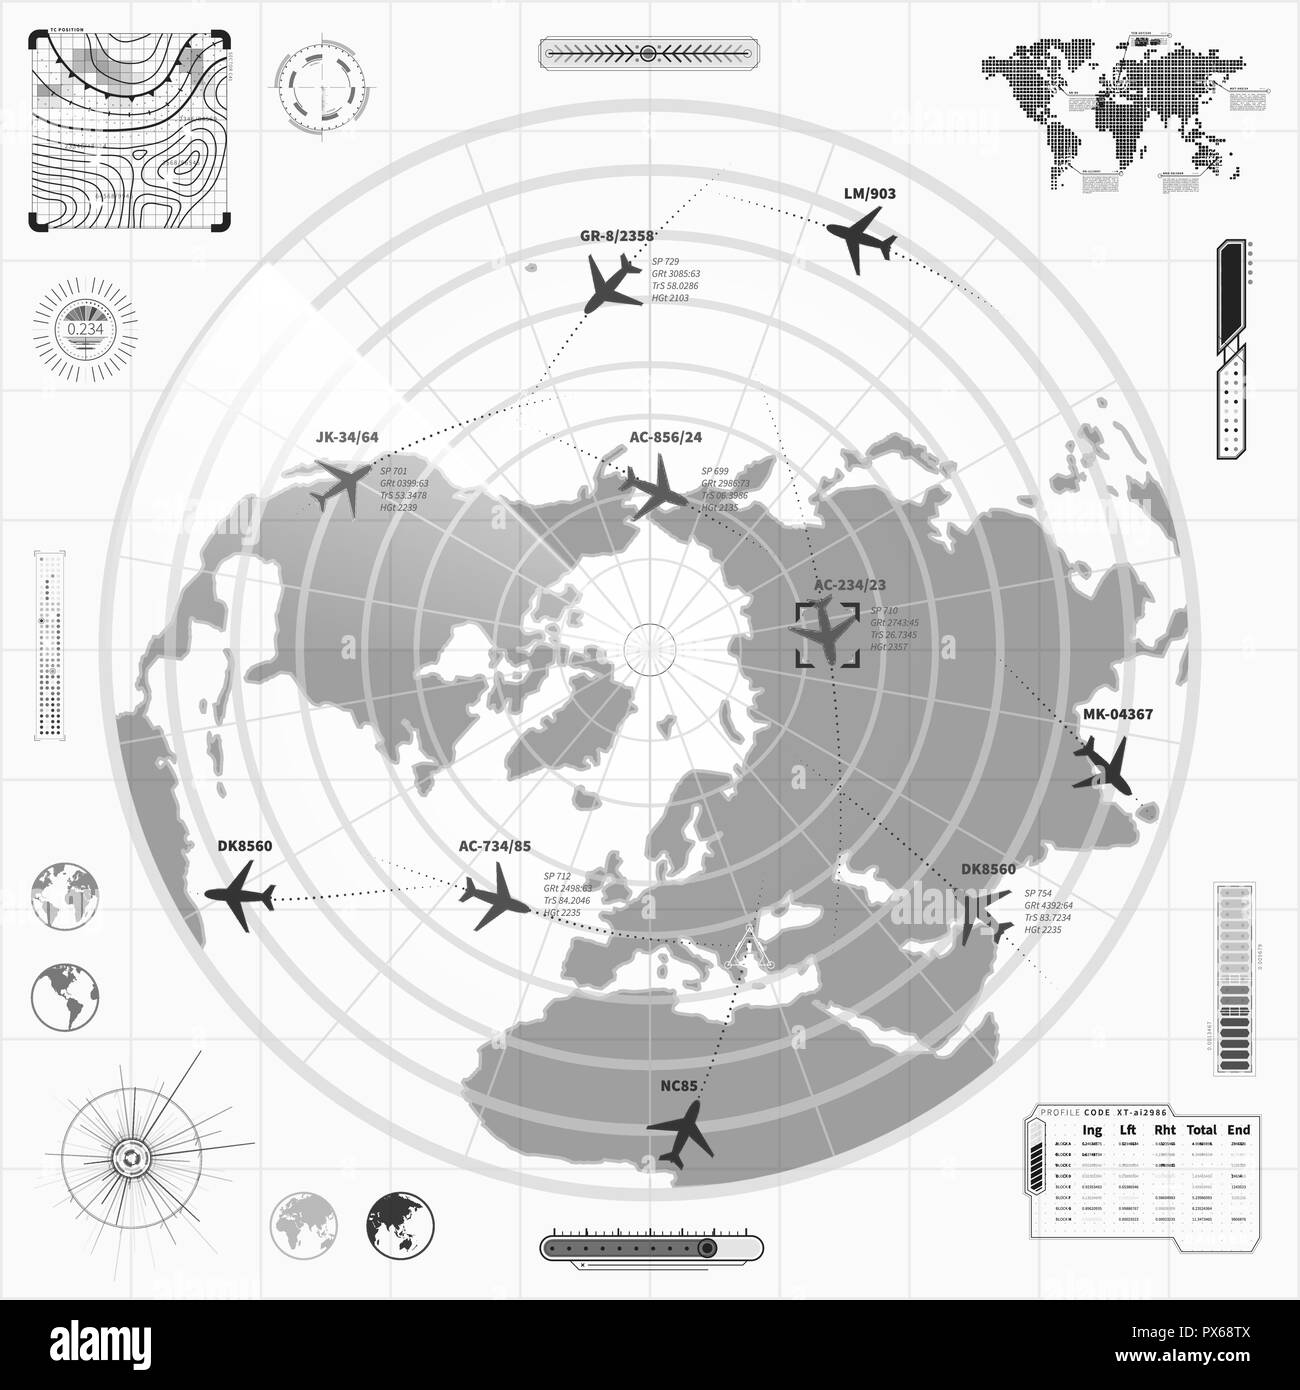 Le noir et blanc avec affichage des radars militaires avec des avions et des traces cible signer Illustration de Vecteur